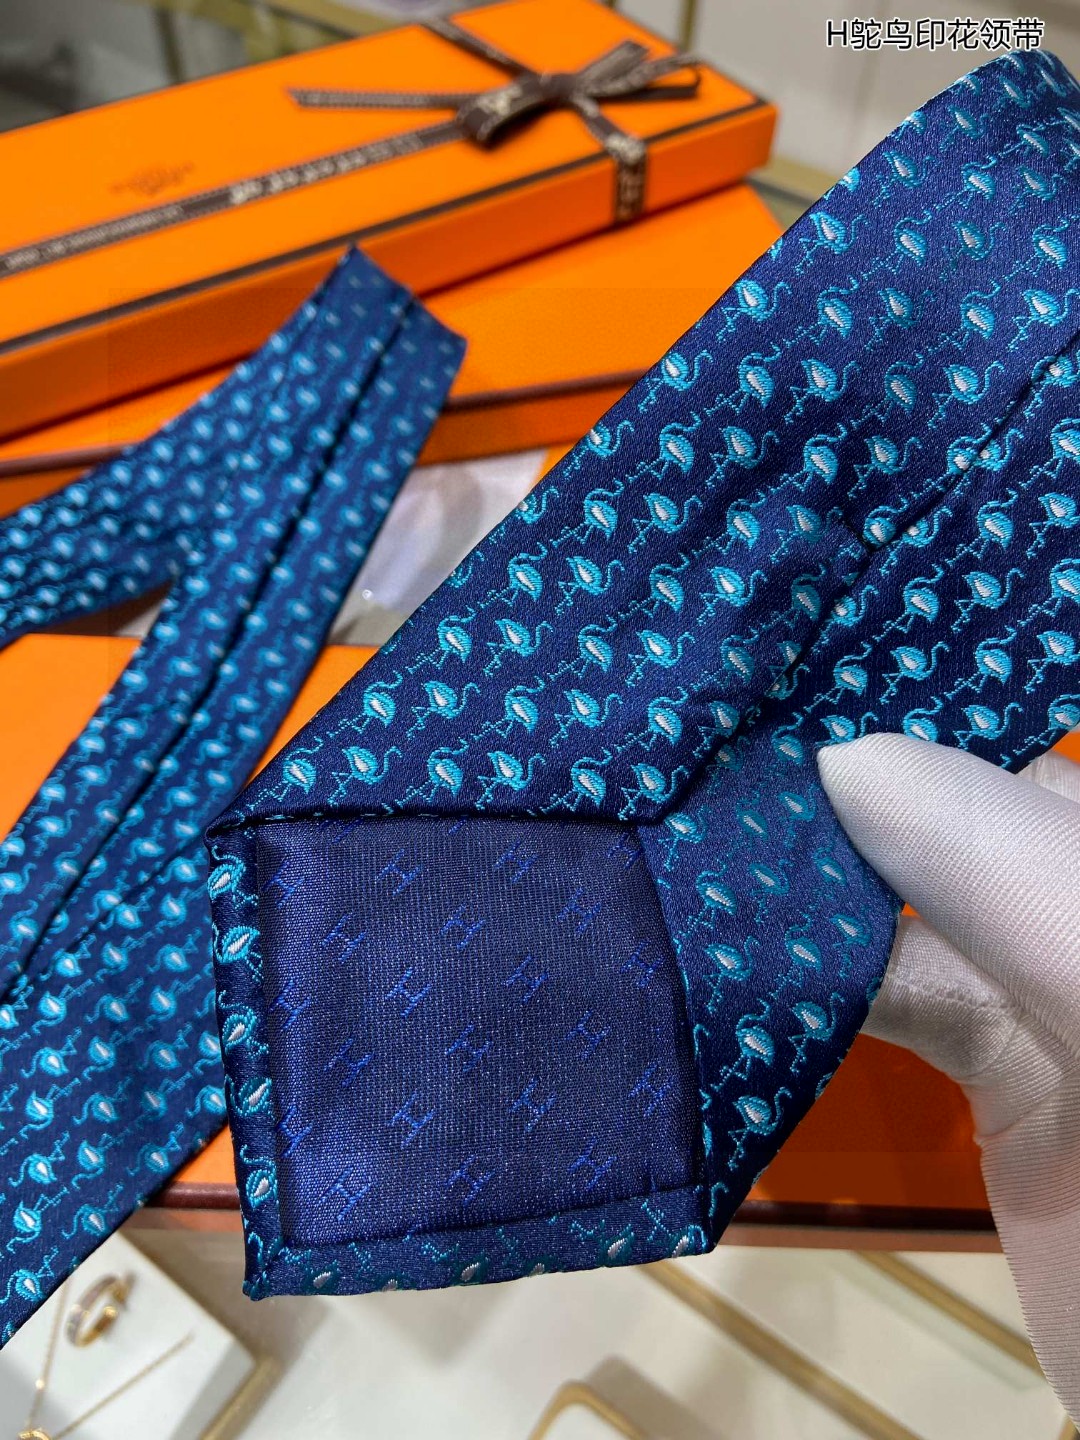 特价男士新款领带系列H鸵鸟印花领带稀有H家每年都有一千条不同印花的领带面世从最初的多以几何图案表现骑术活